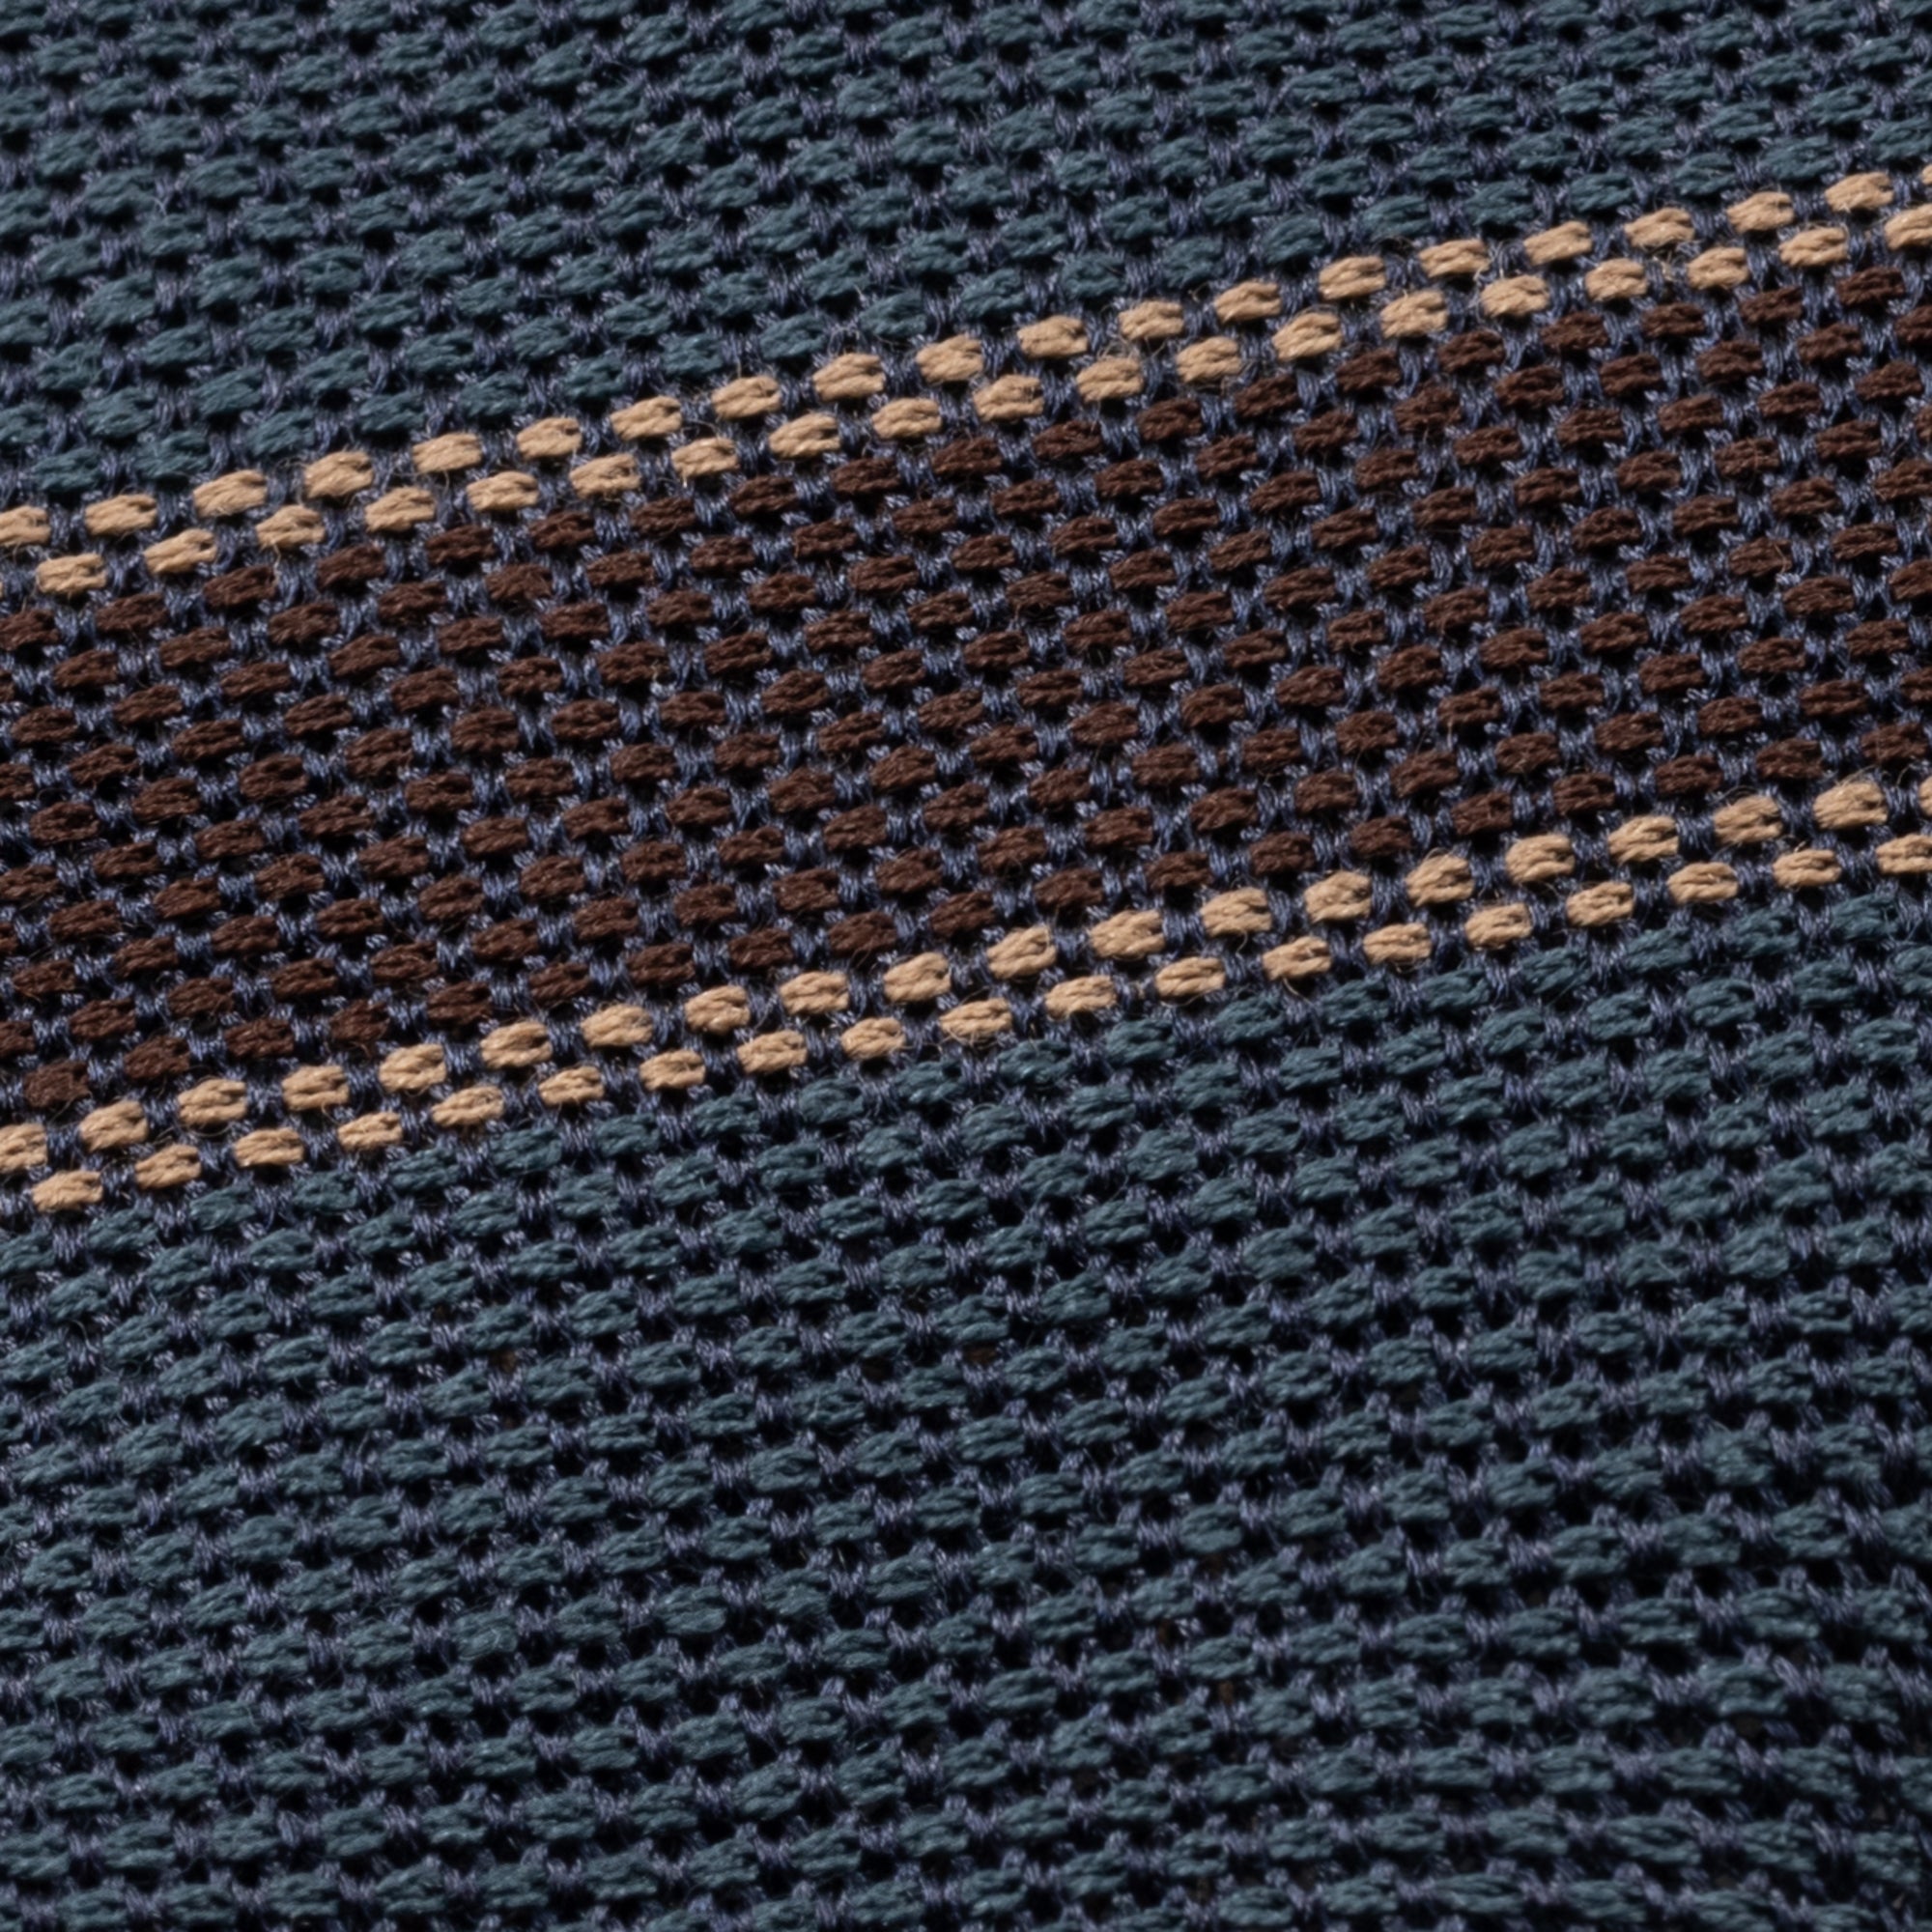 Teal & Brown Stripe Wool-Silk Grenadine Tie